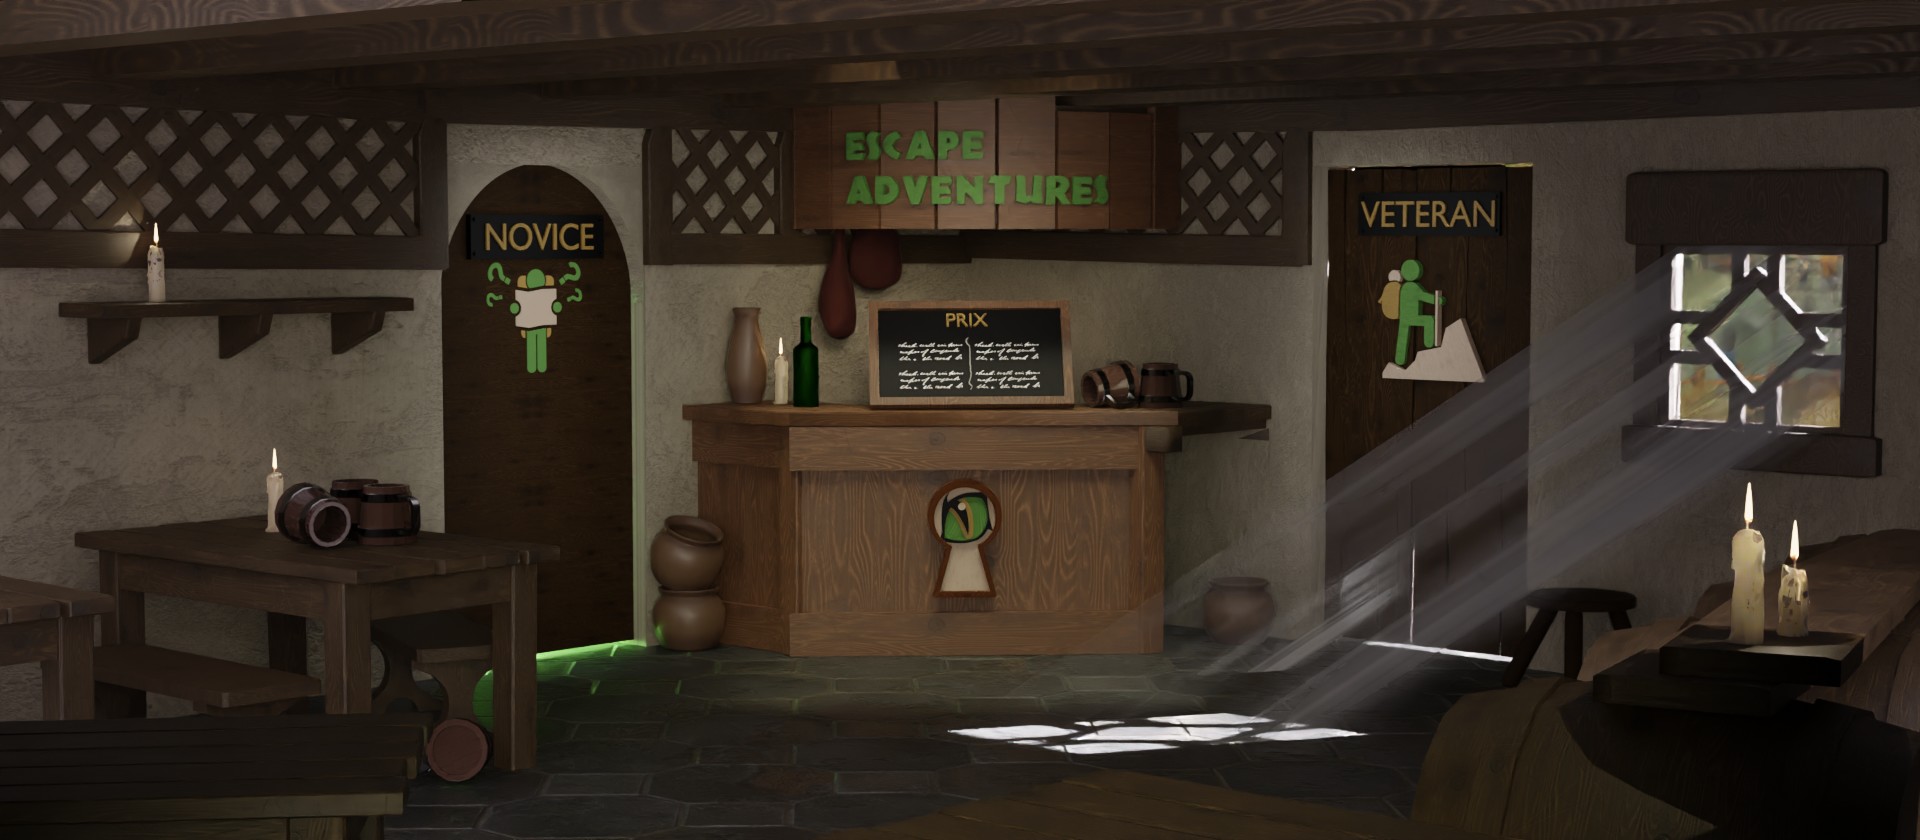 image de fond d'accueil du site de la société d'escape game escape adventures Angers représentant une taverne modélisée en 3D